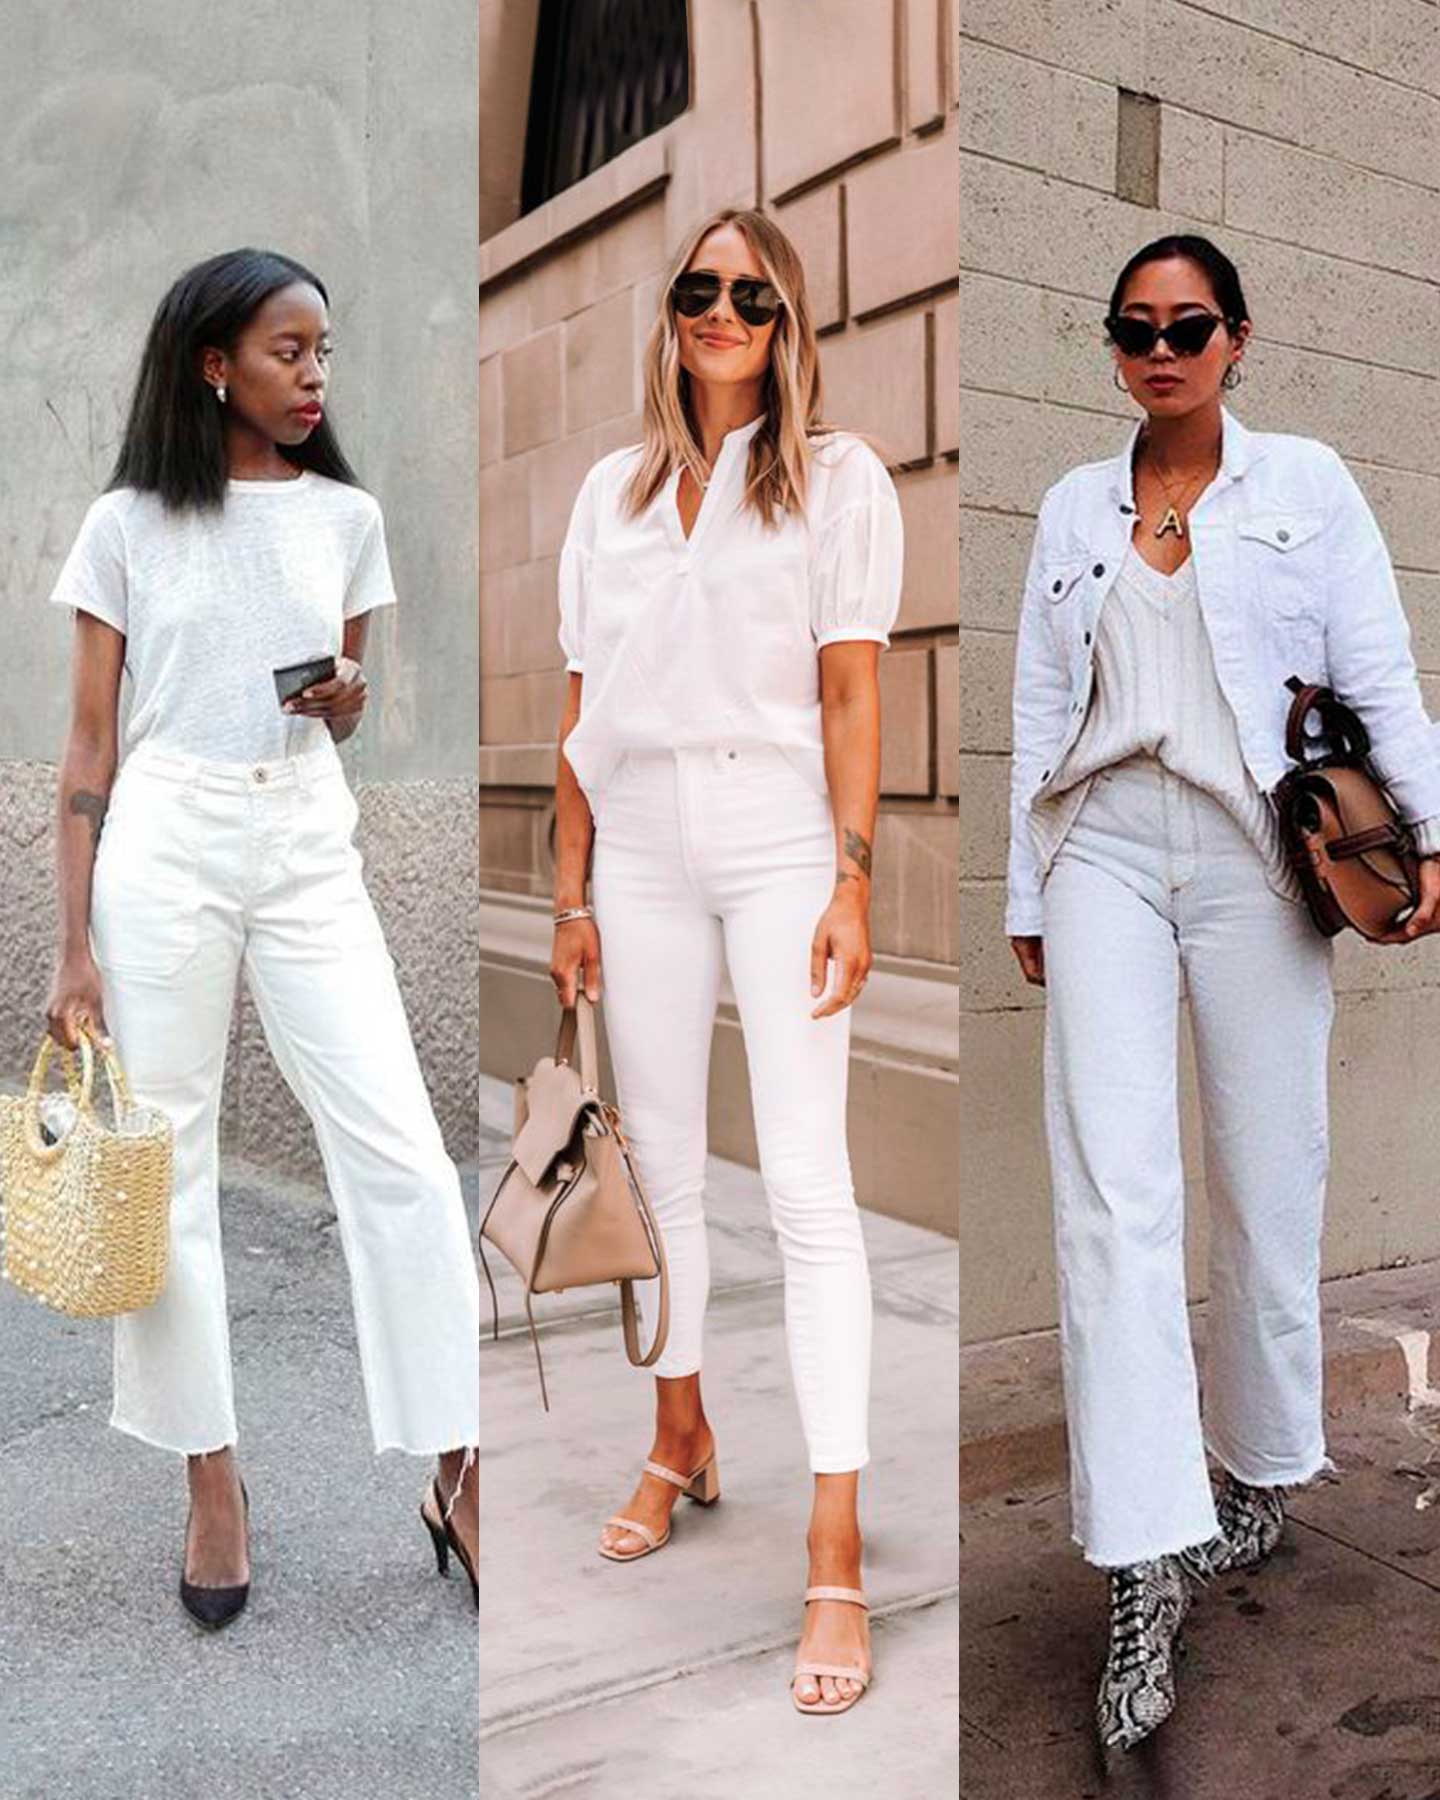 Cómo combinar los jeans blancos?